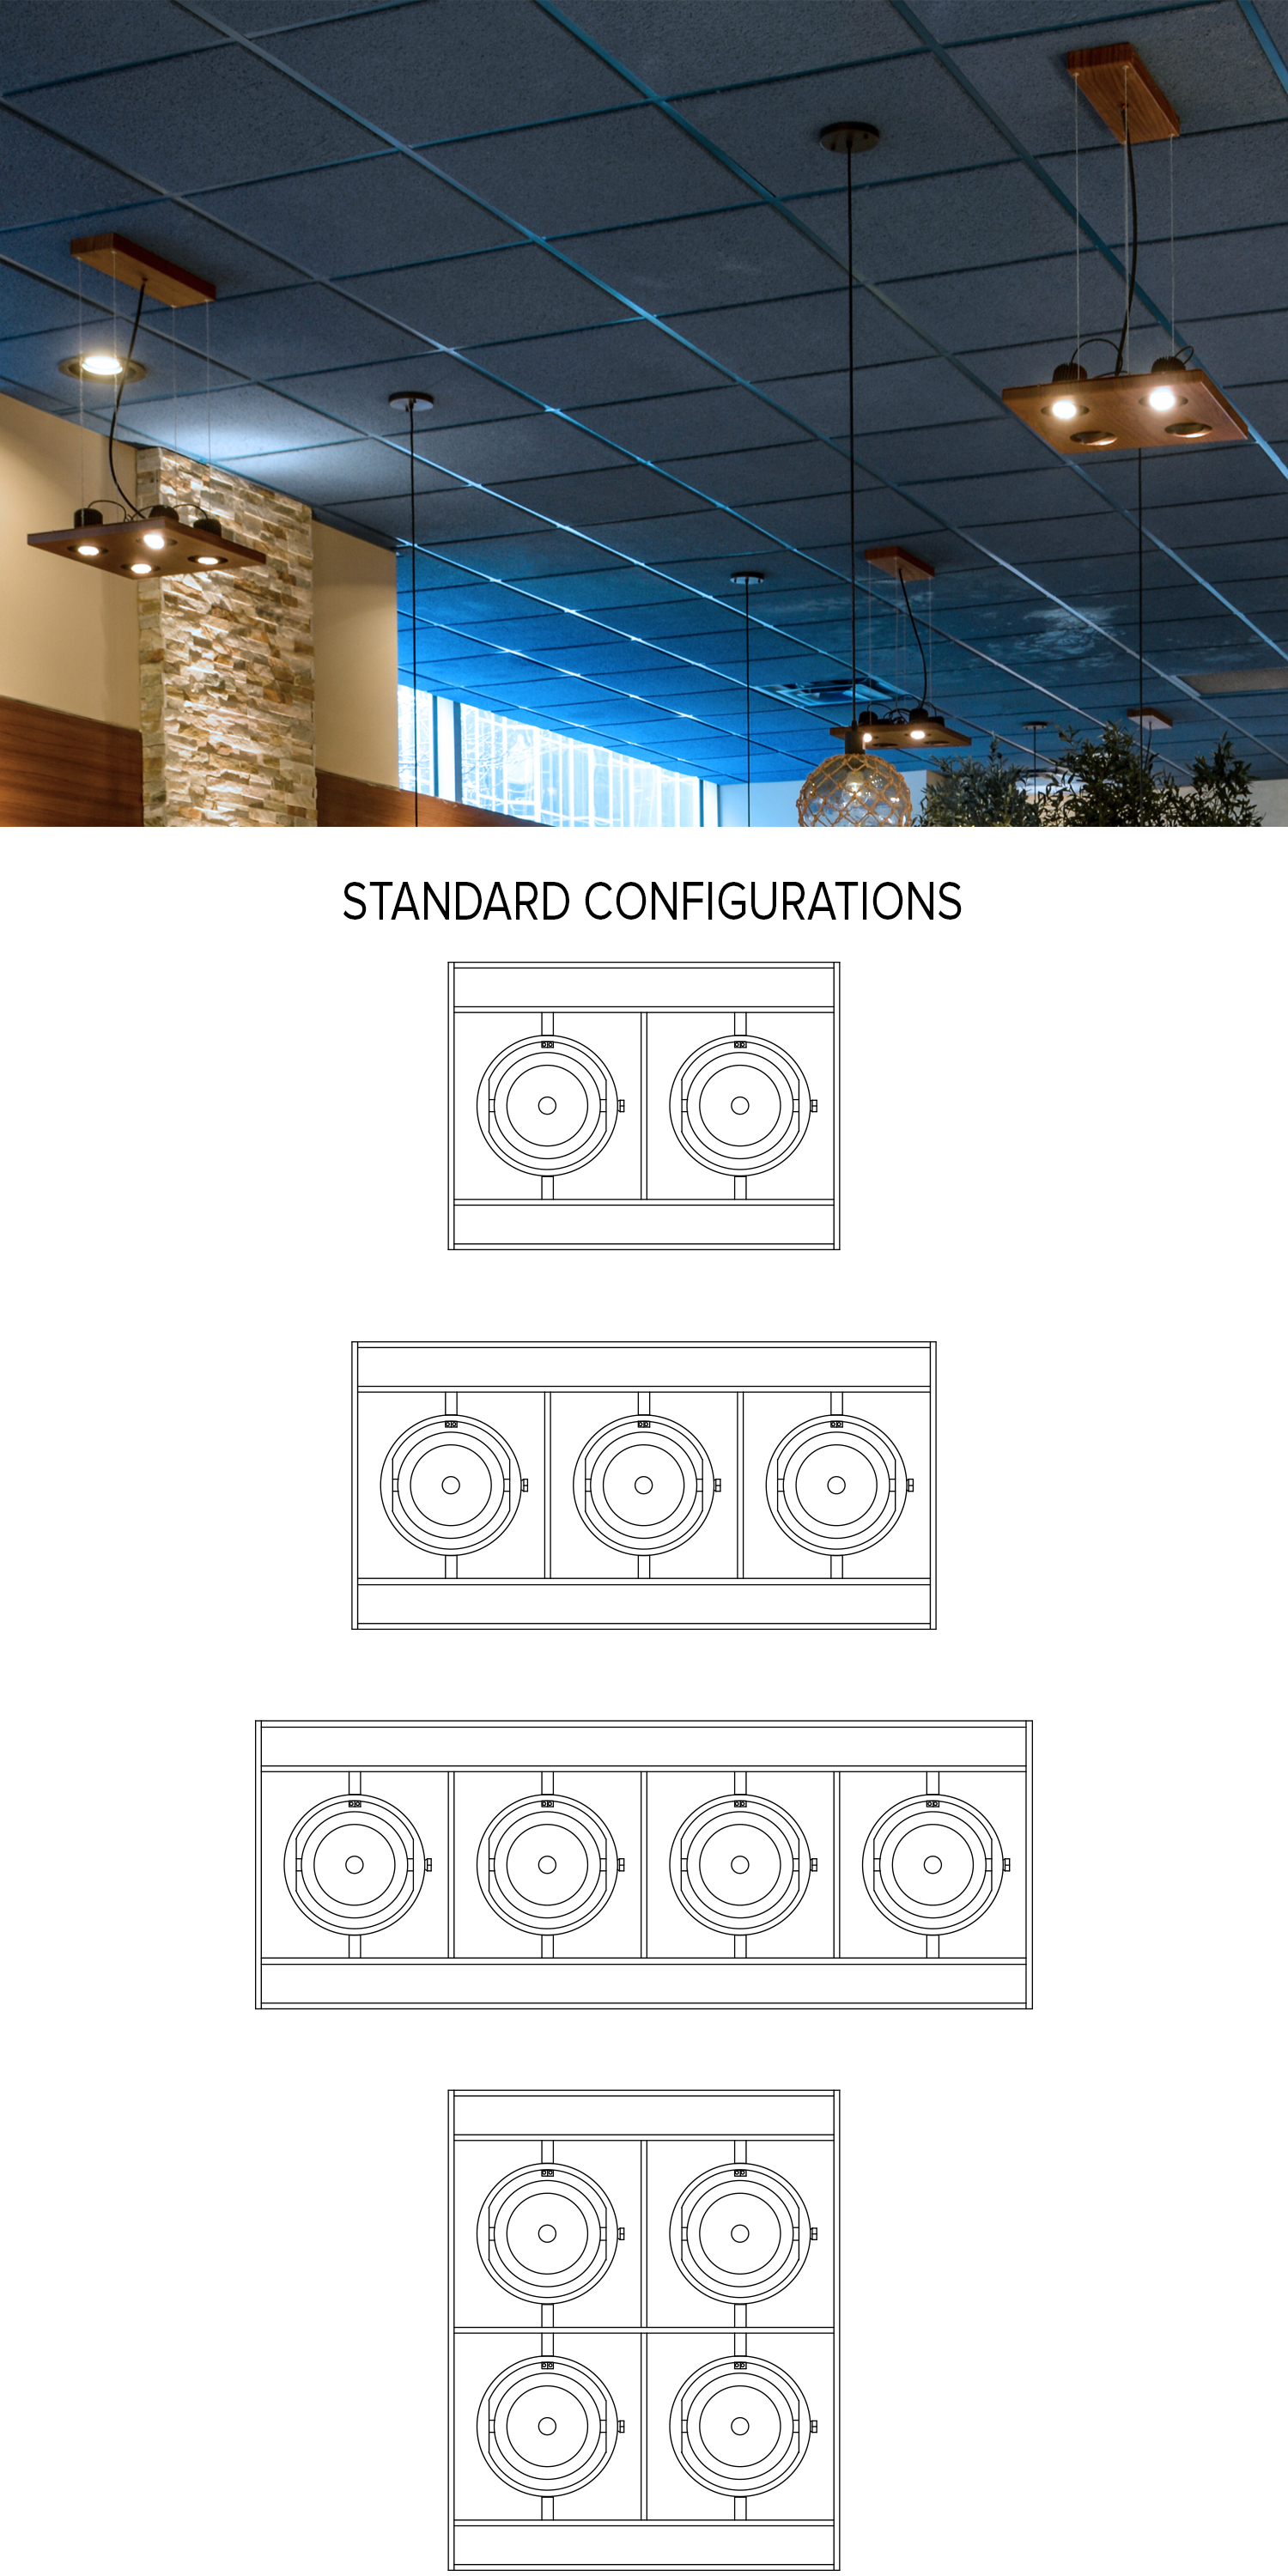 Grid fixture standard configurations